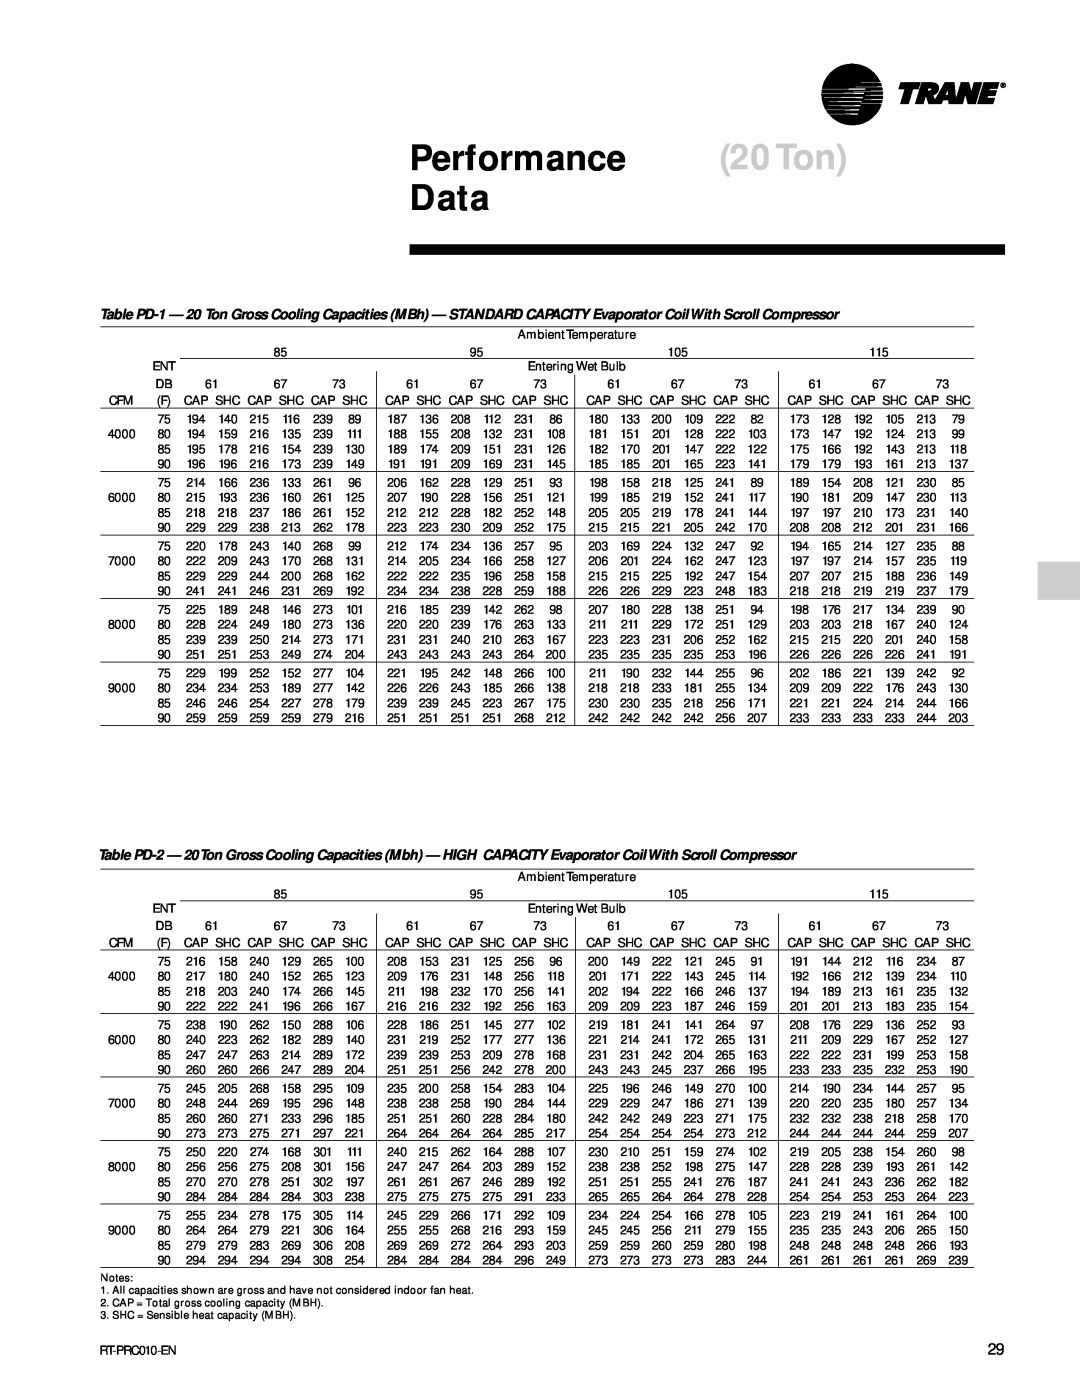 Trane RT-PRC010-EN manual Performance 20Ton Data 